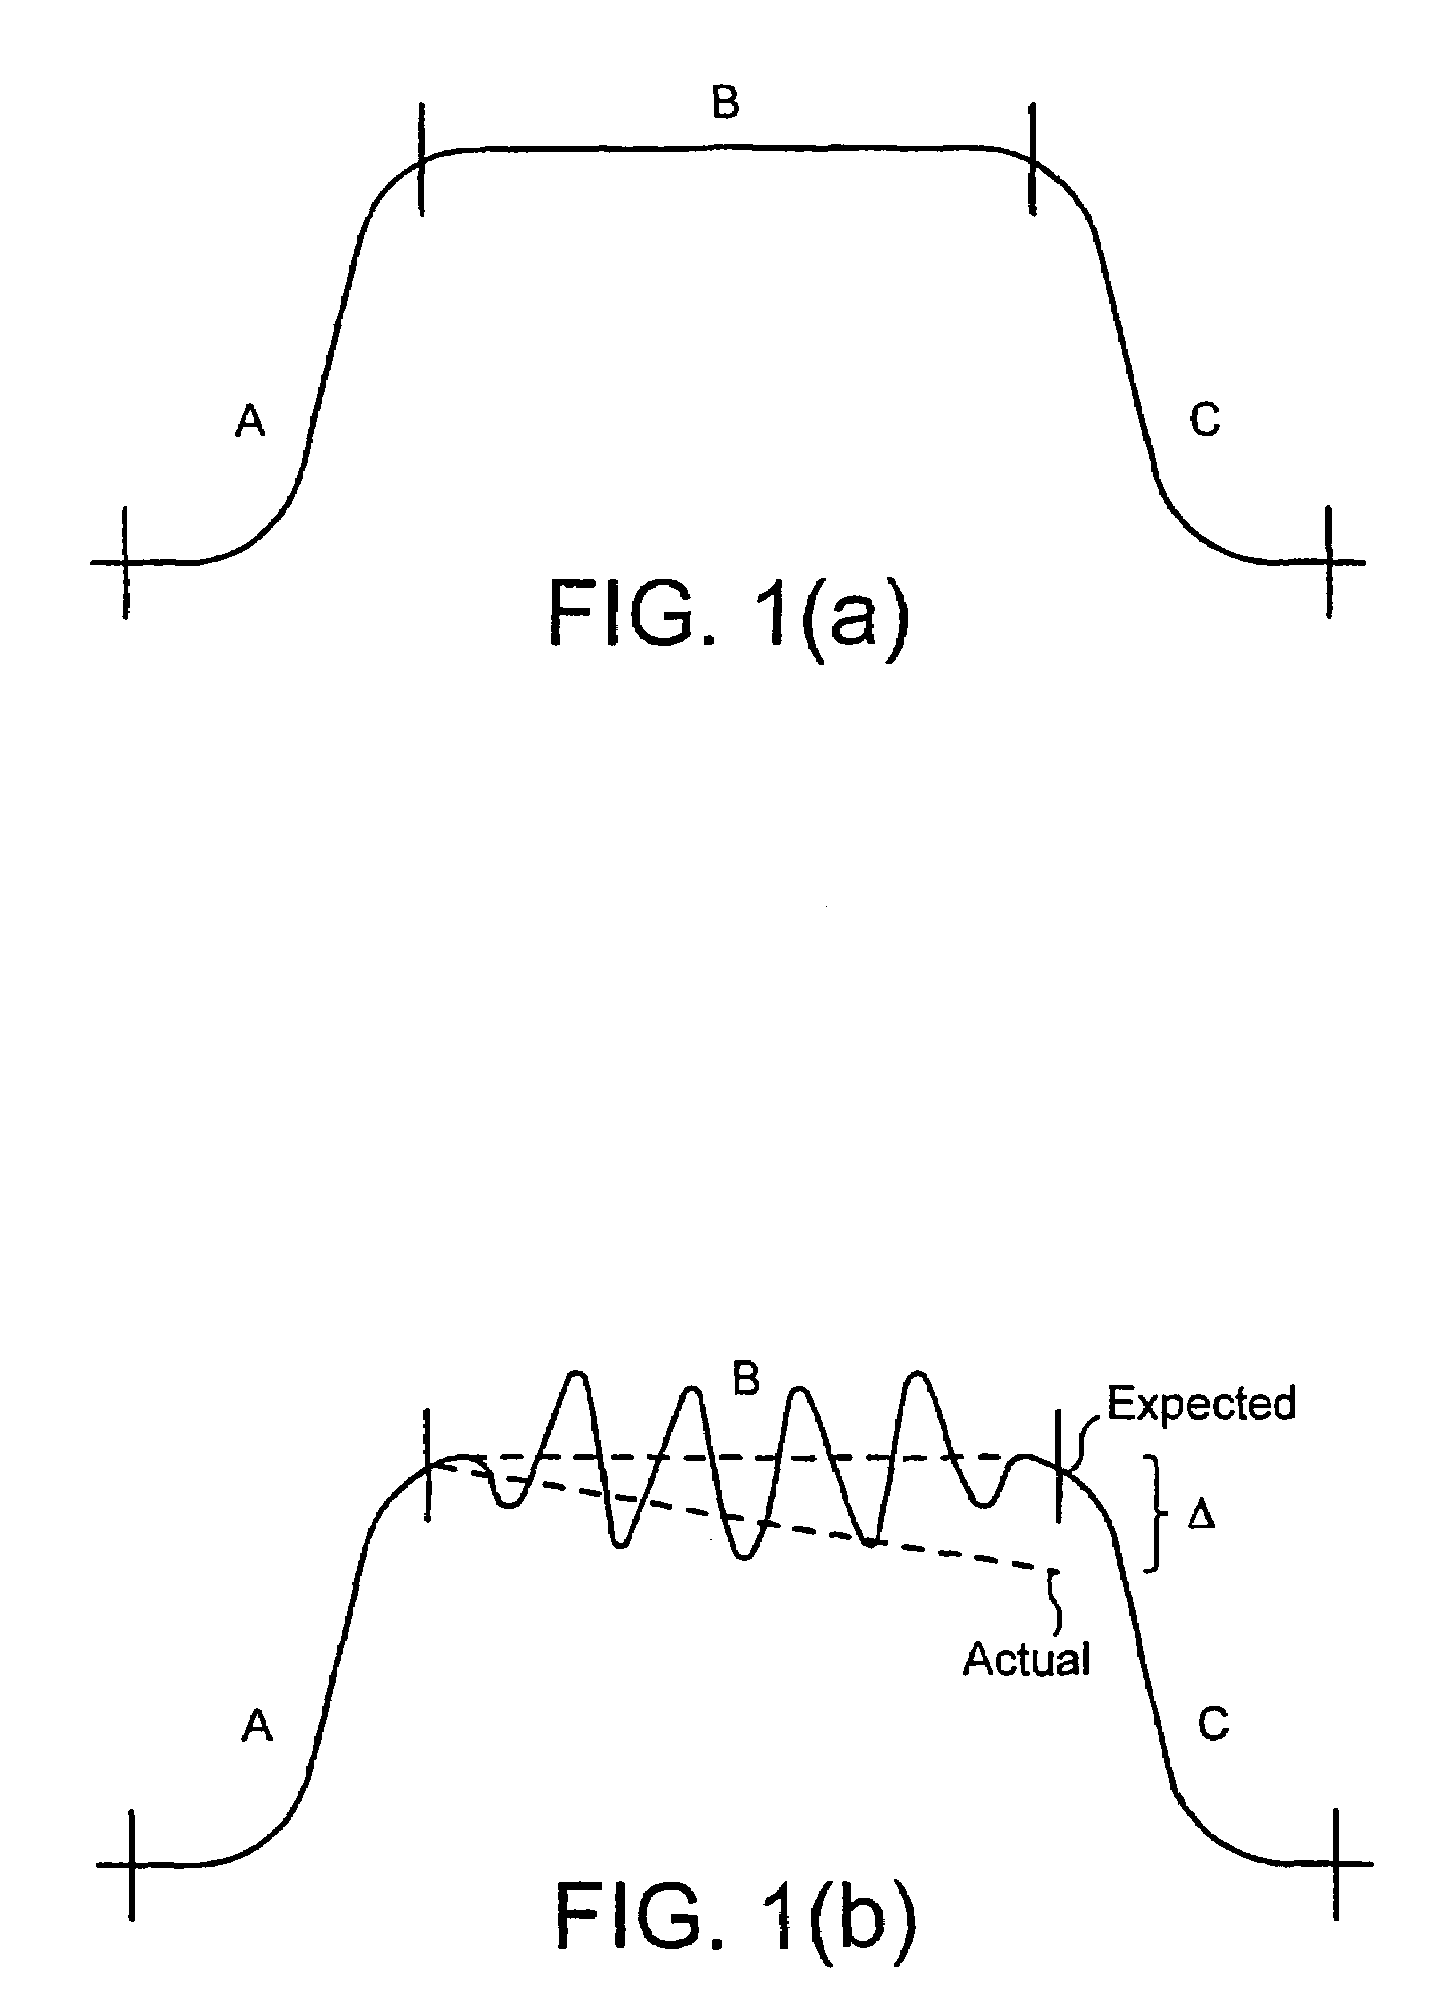 Power control for non-constant envelope modulation